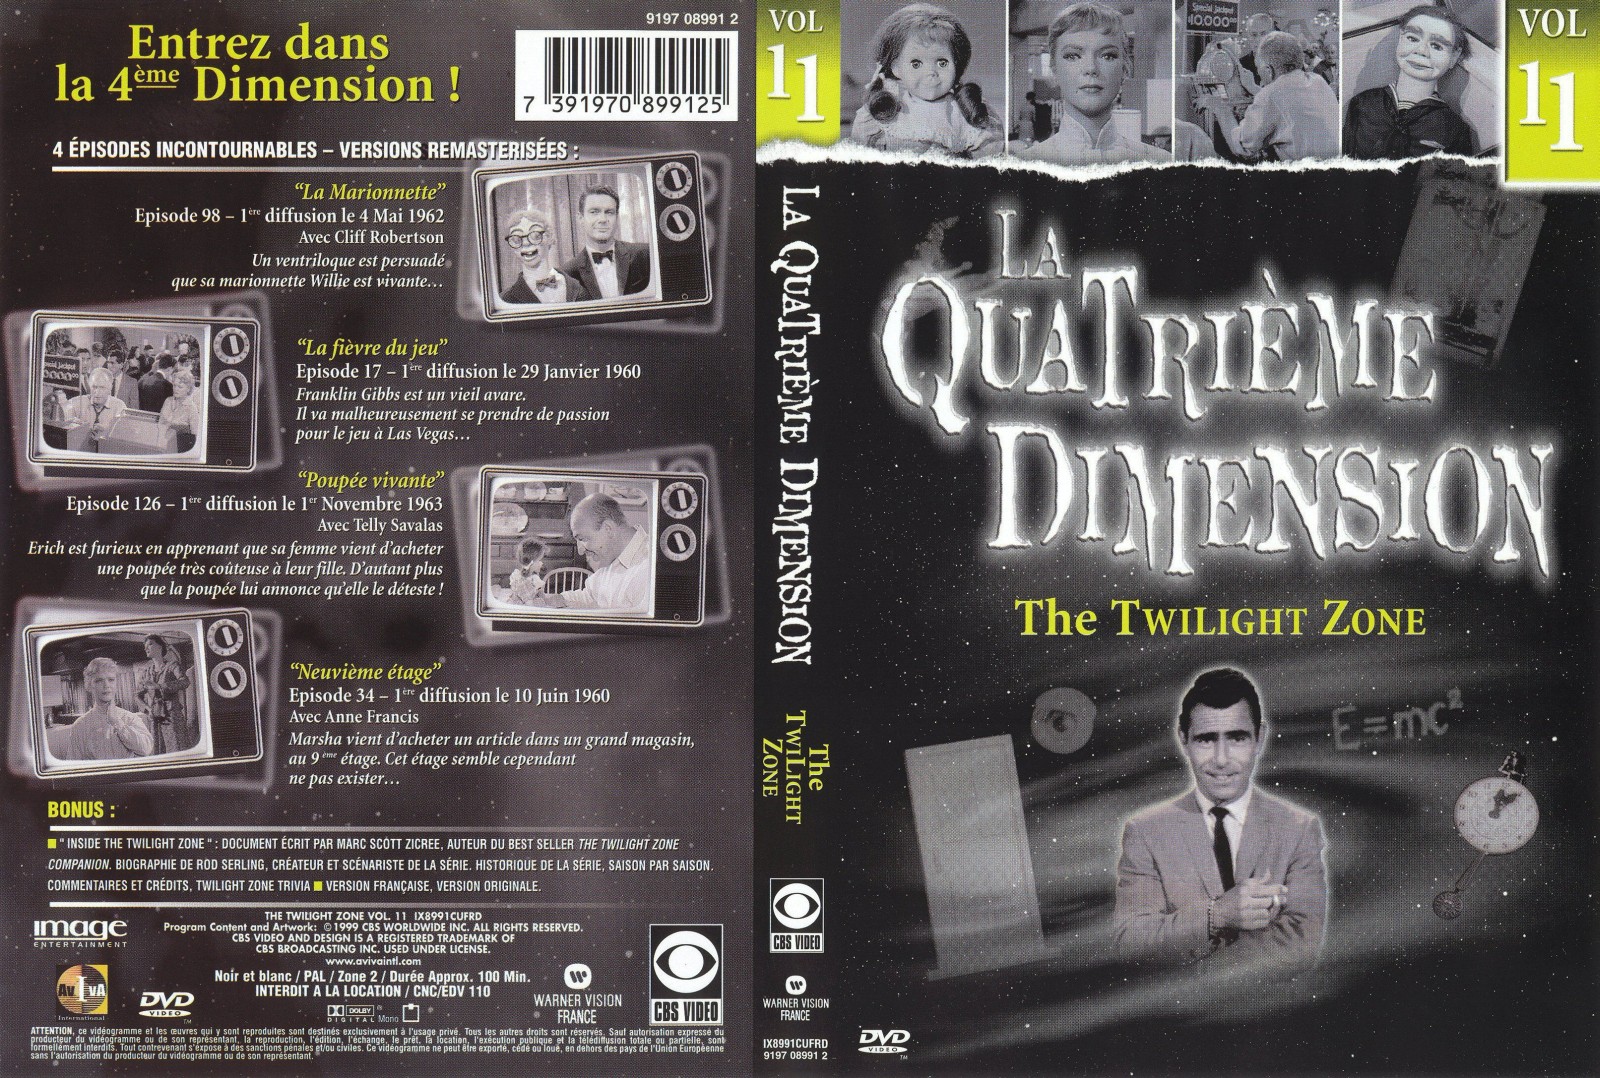 Jaquette DVD La quatrieme dimension vol 11